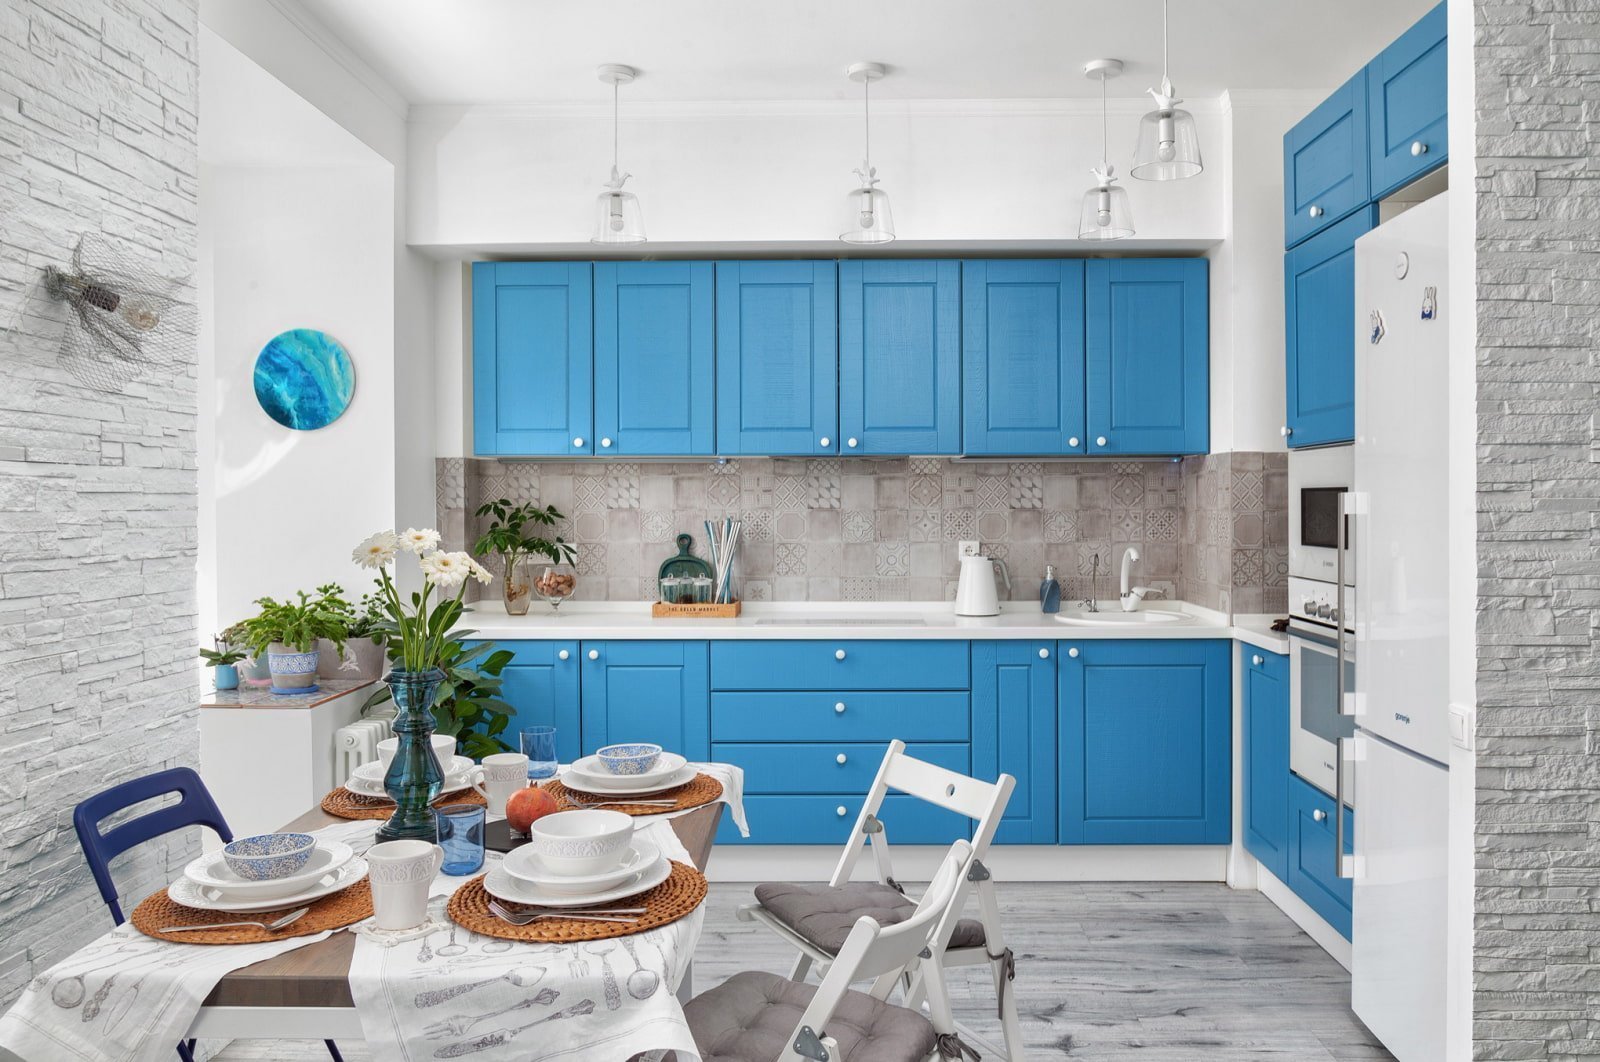 С какими цветами сочетается голубая кухня в интерьере?